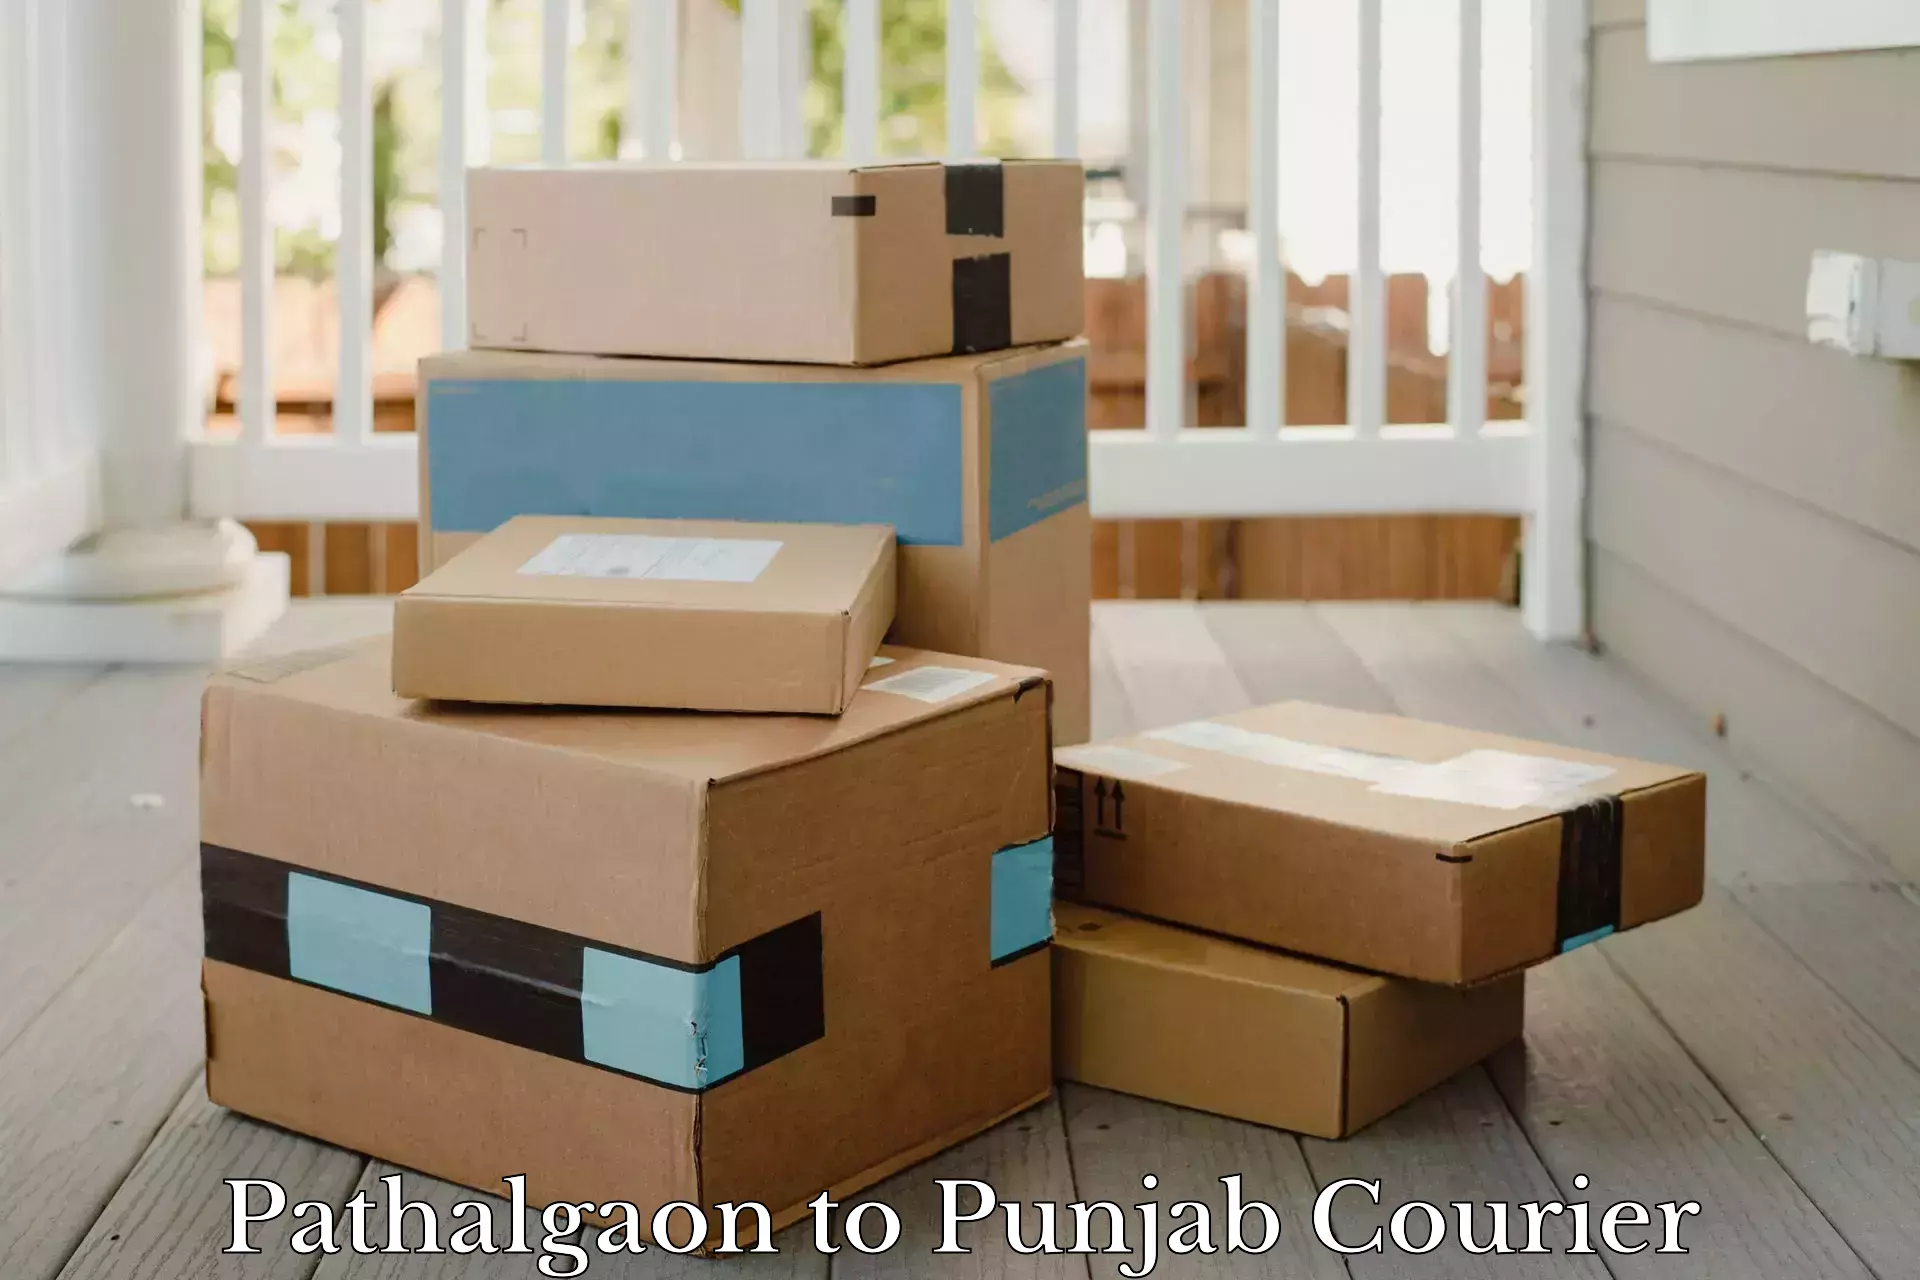 Express mail service Pathalgaon to Punjab